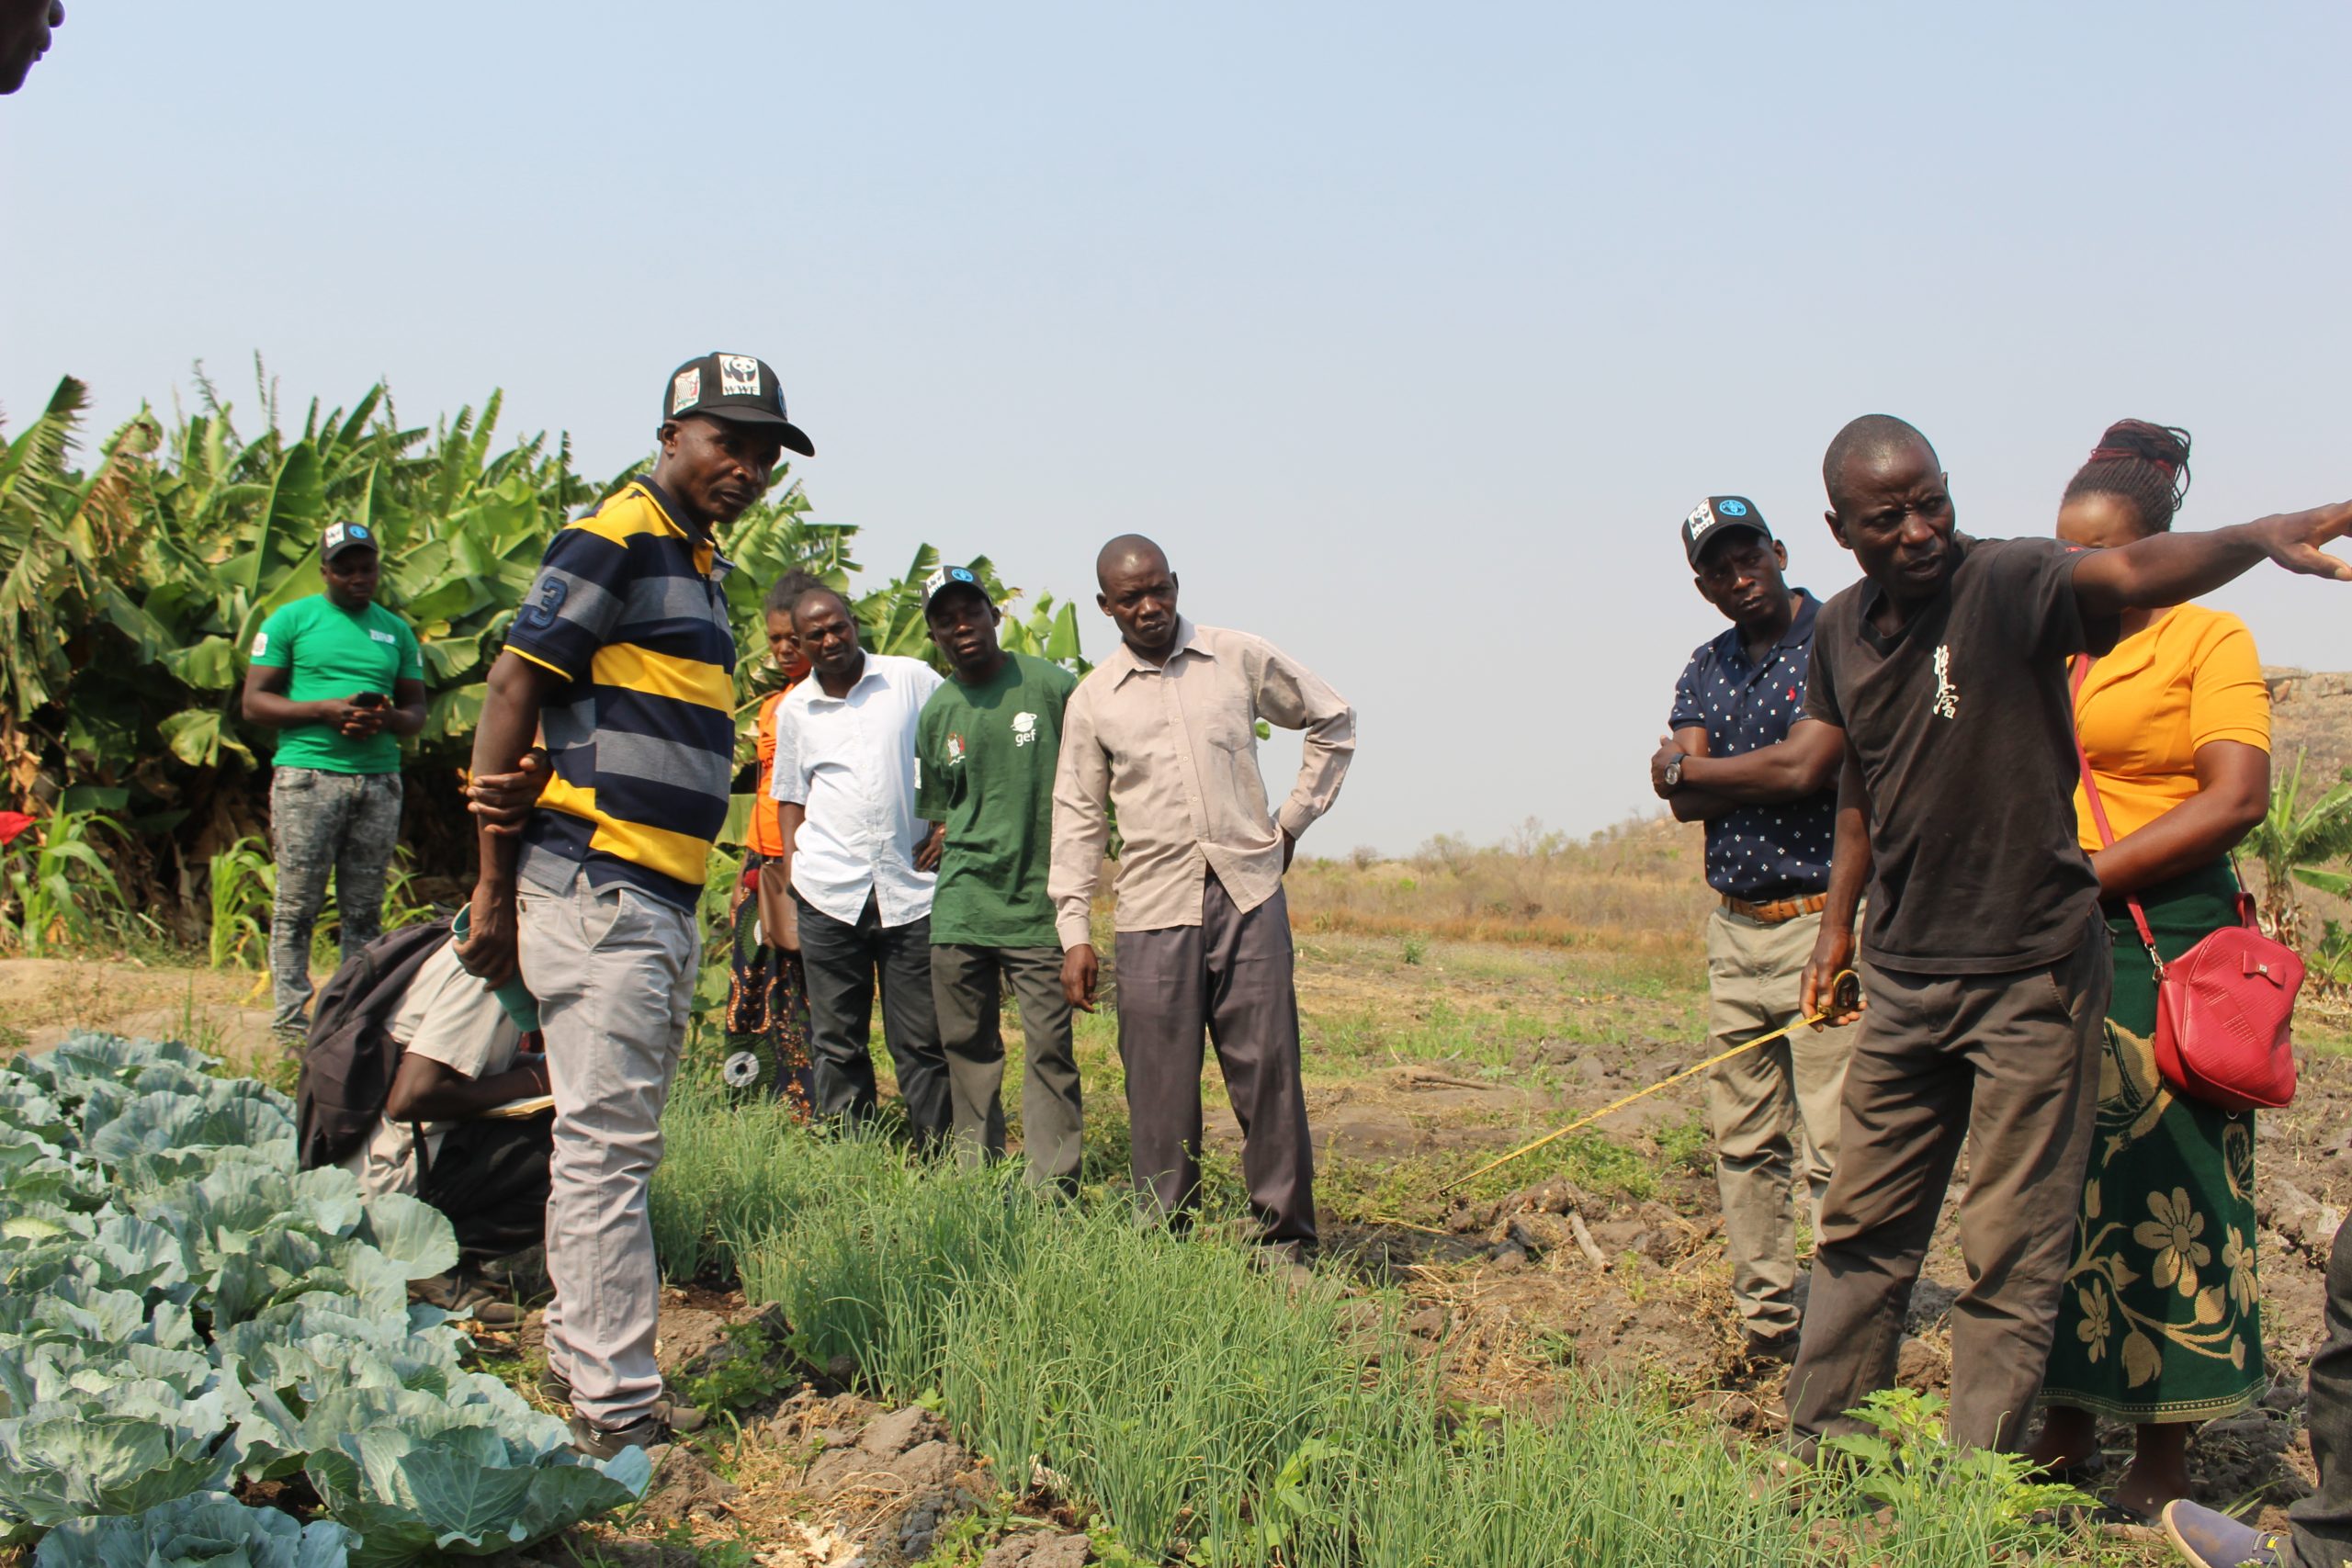 Farmers visiting Emmanuel Mumba